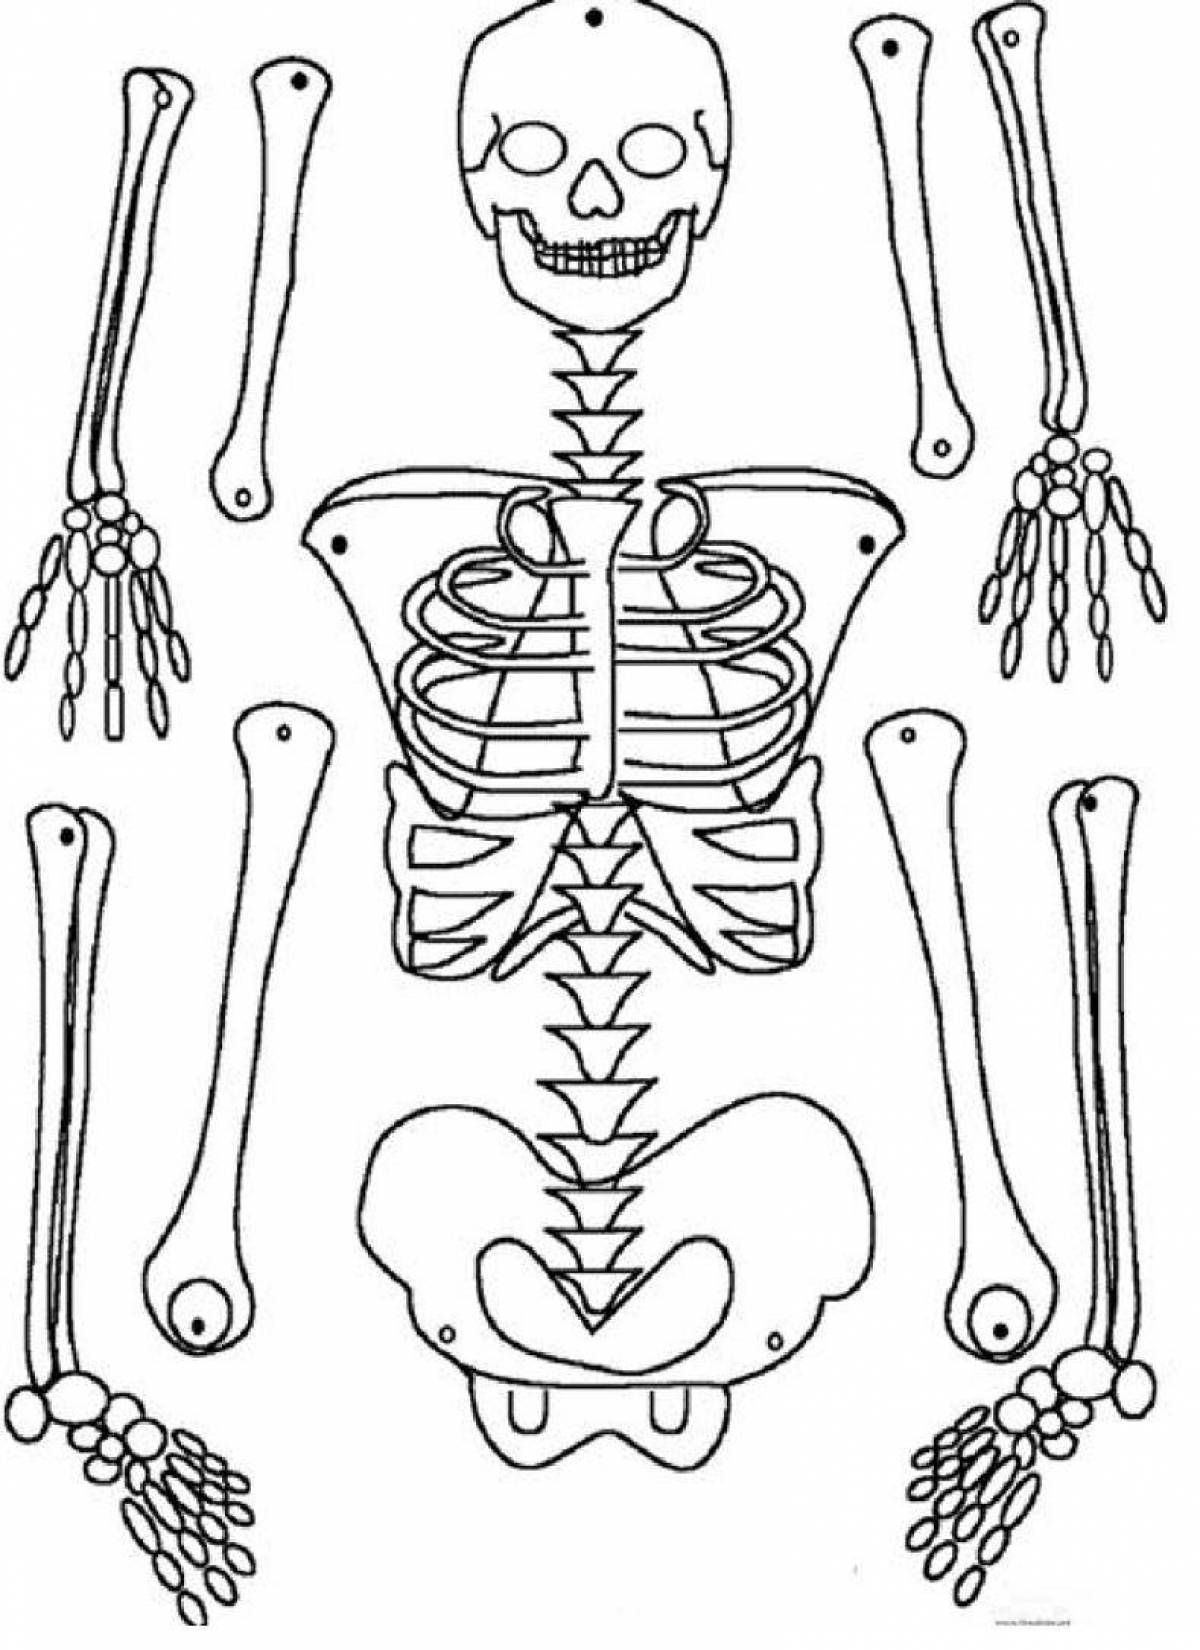 Скелет человека для детей